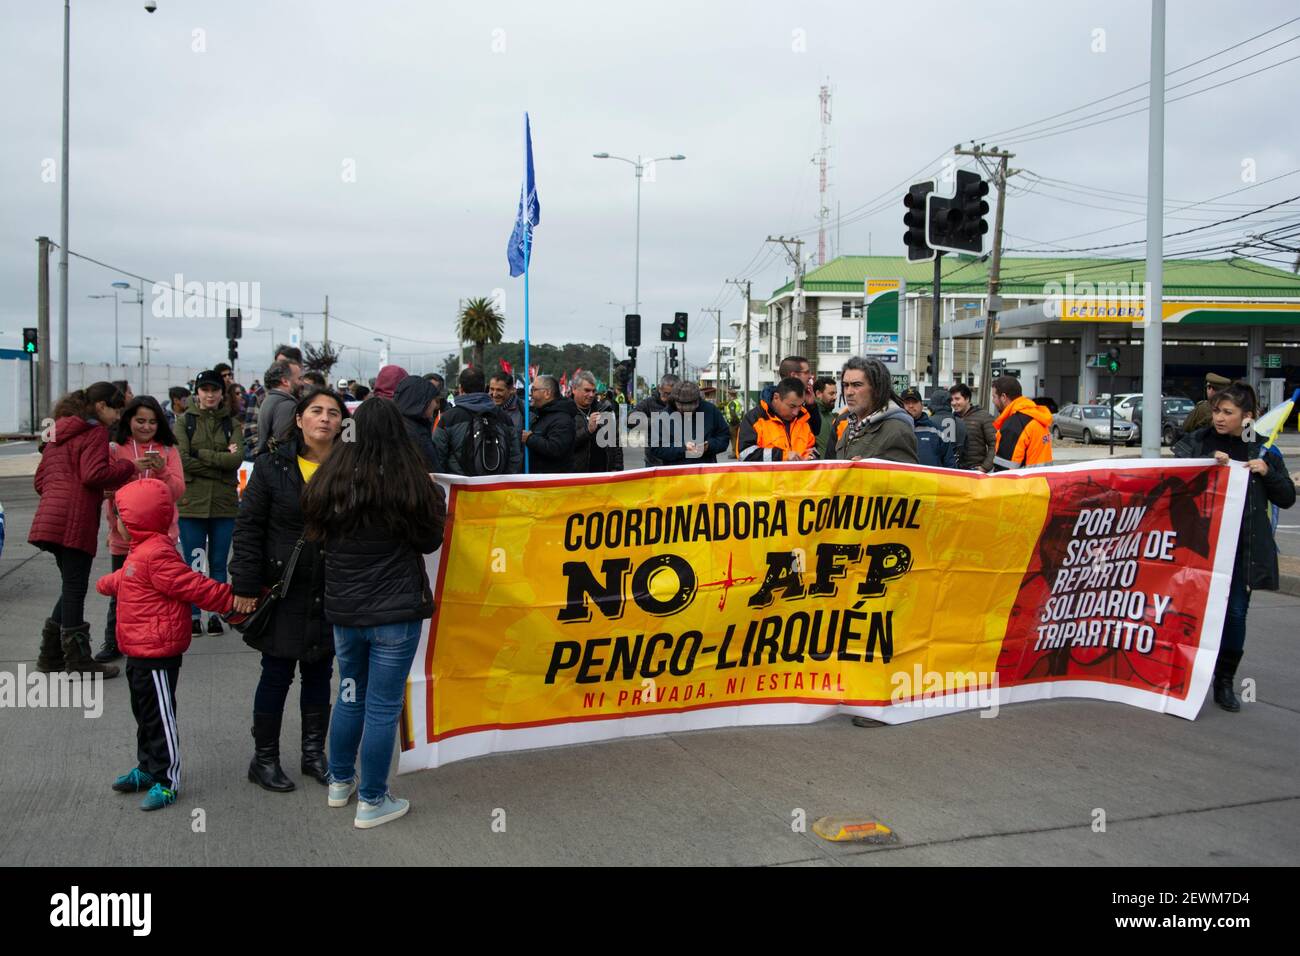 Lienzo de la coordiandora no mas AFP de Lirquen, en la manifestacion del 1º de mayo en Talcahuano. Stock Photo